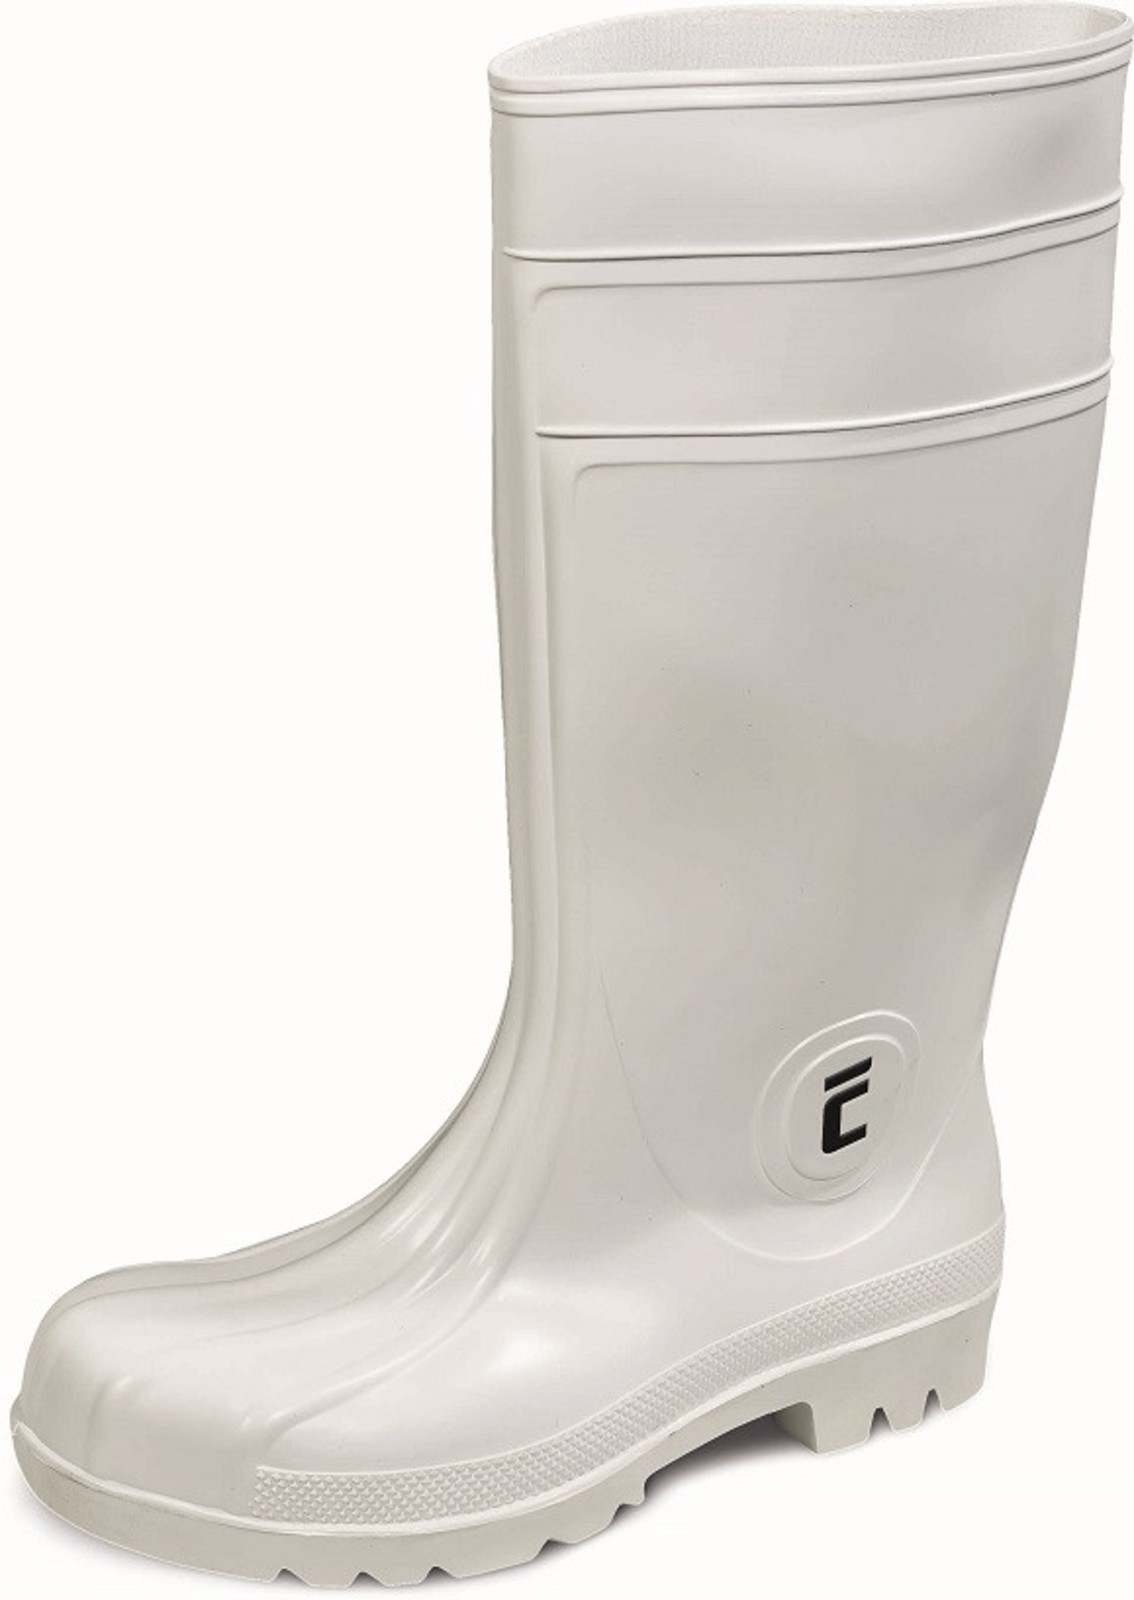 Bezpečnostné gumáky Eurofort S4 - veľkosť: 47, farba: biela